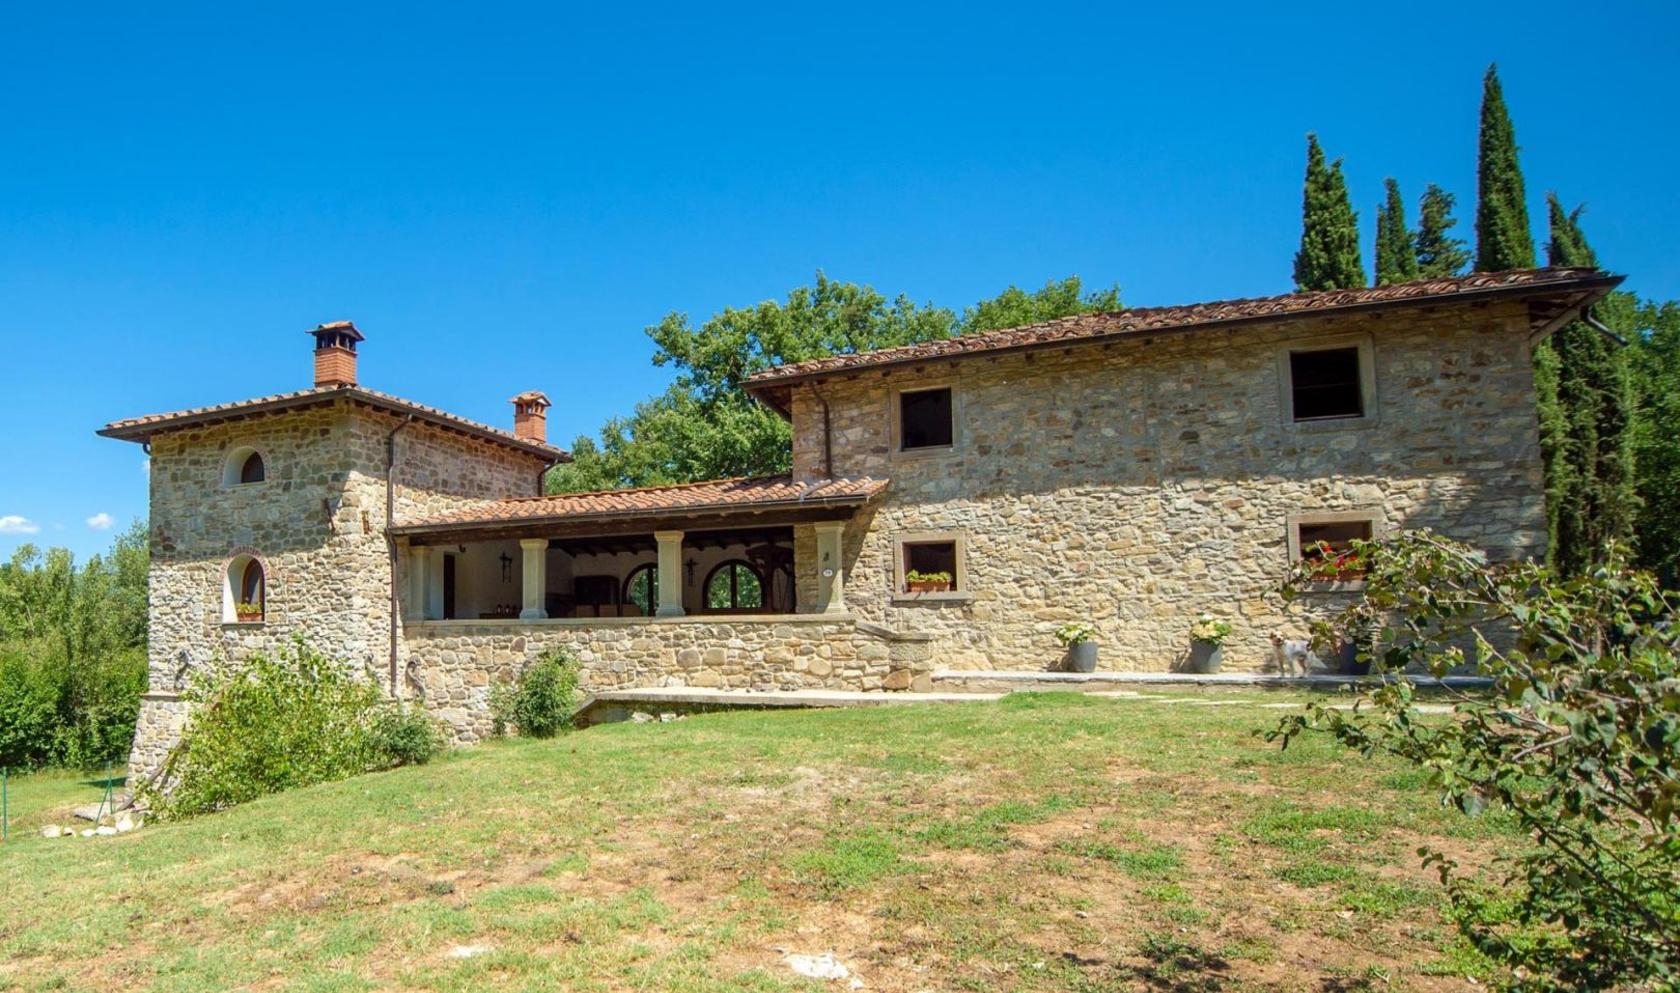 Toscana Immobiliare - Casa colonica toscana con vigneto in vendita Arezzo Chiusi della Verna